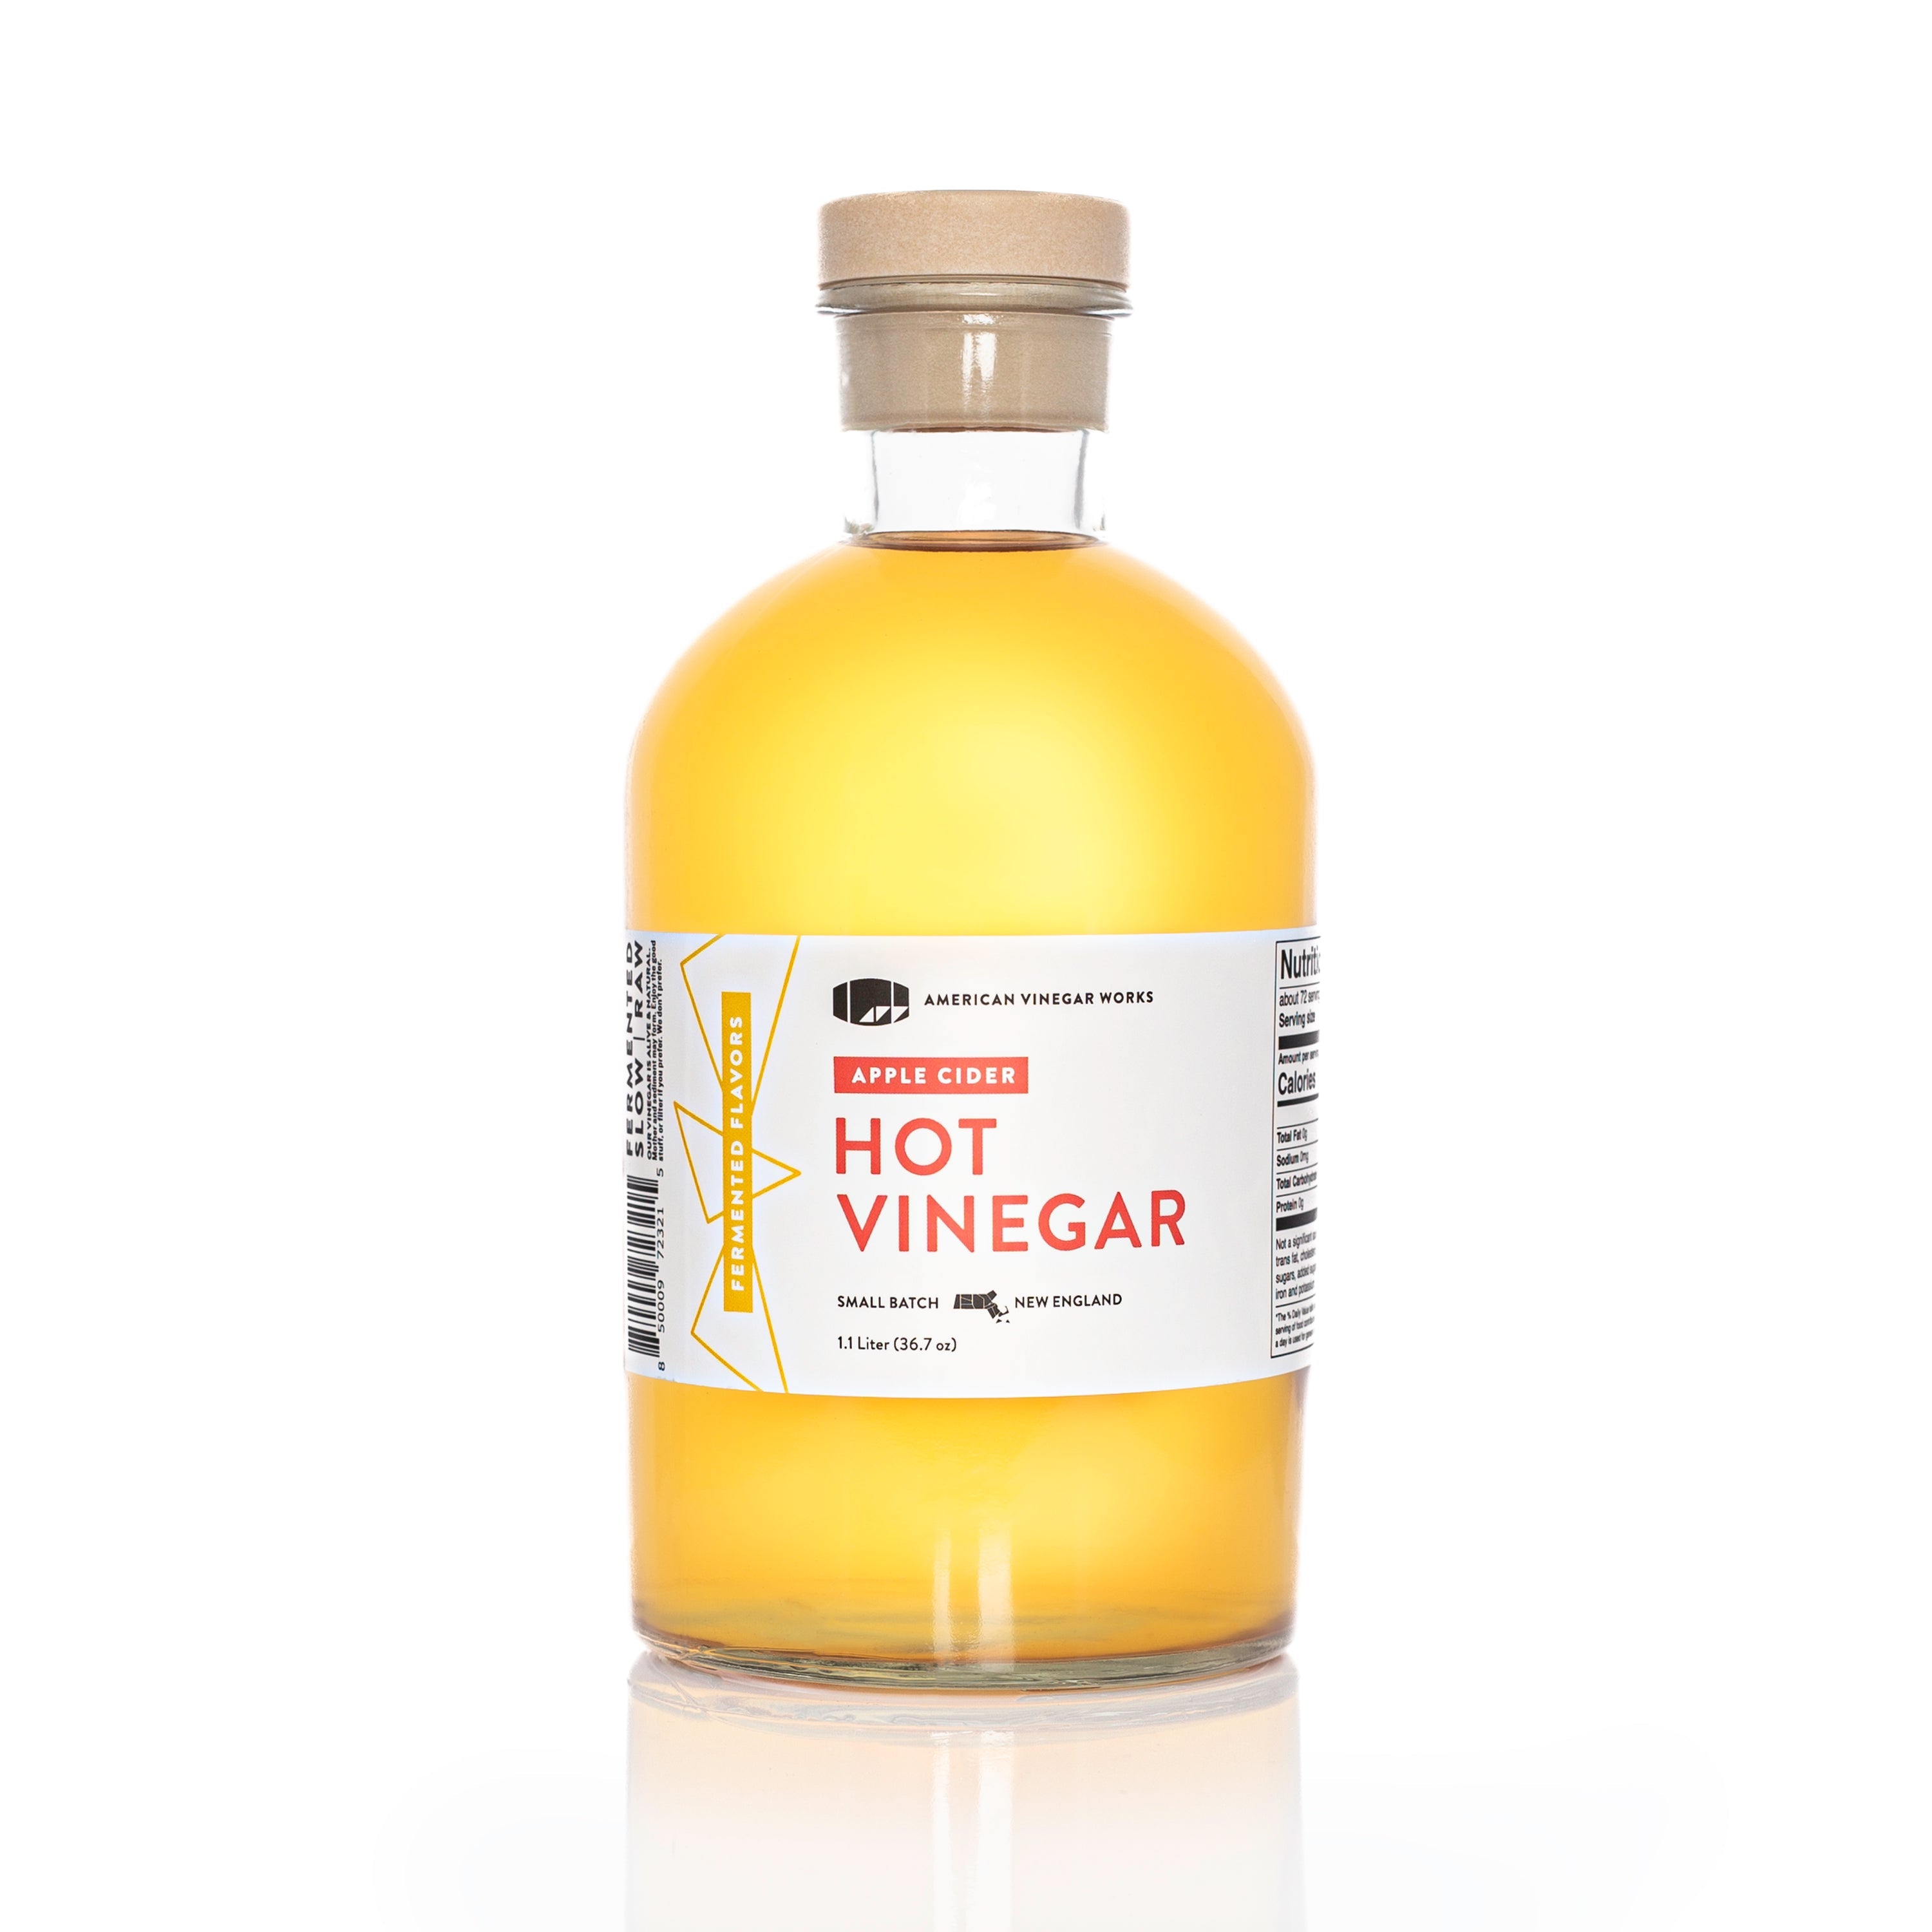 Apple Cider Hot Vinegar